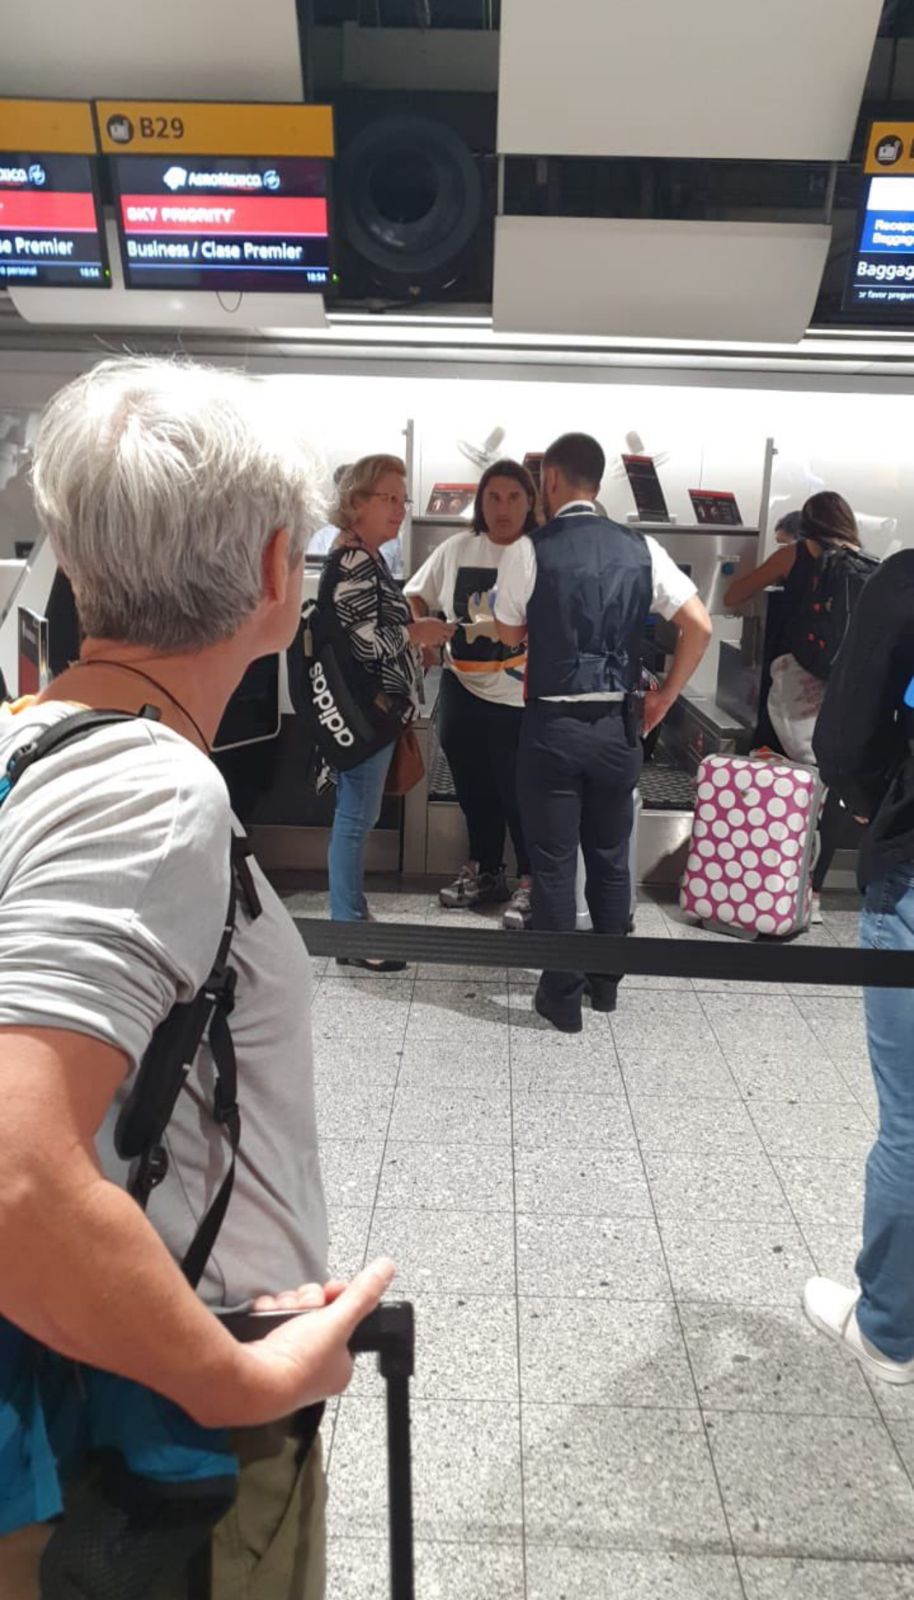 El pasado lunes 8 de agosto el hijo menor del presidente fue captado documentando en el mostrador Premier de Aeroméxico del aeropuerto Heathrow de Londres (Foto: Twitter/@ManuelVegaMX)